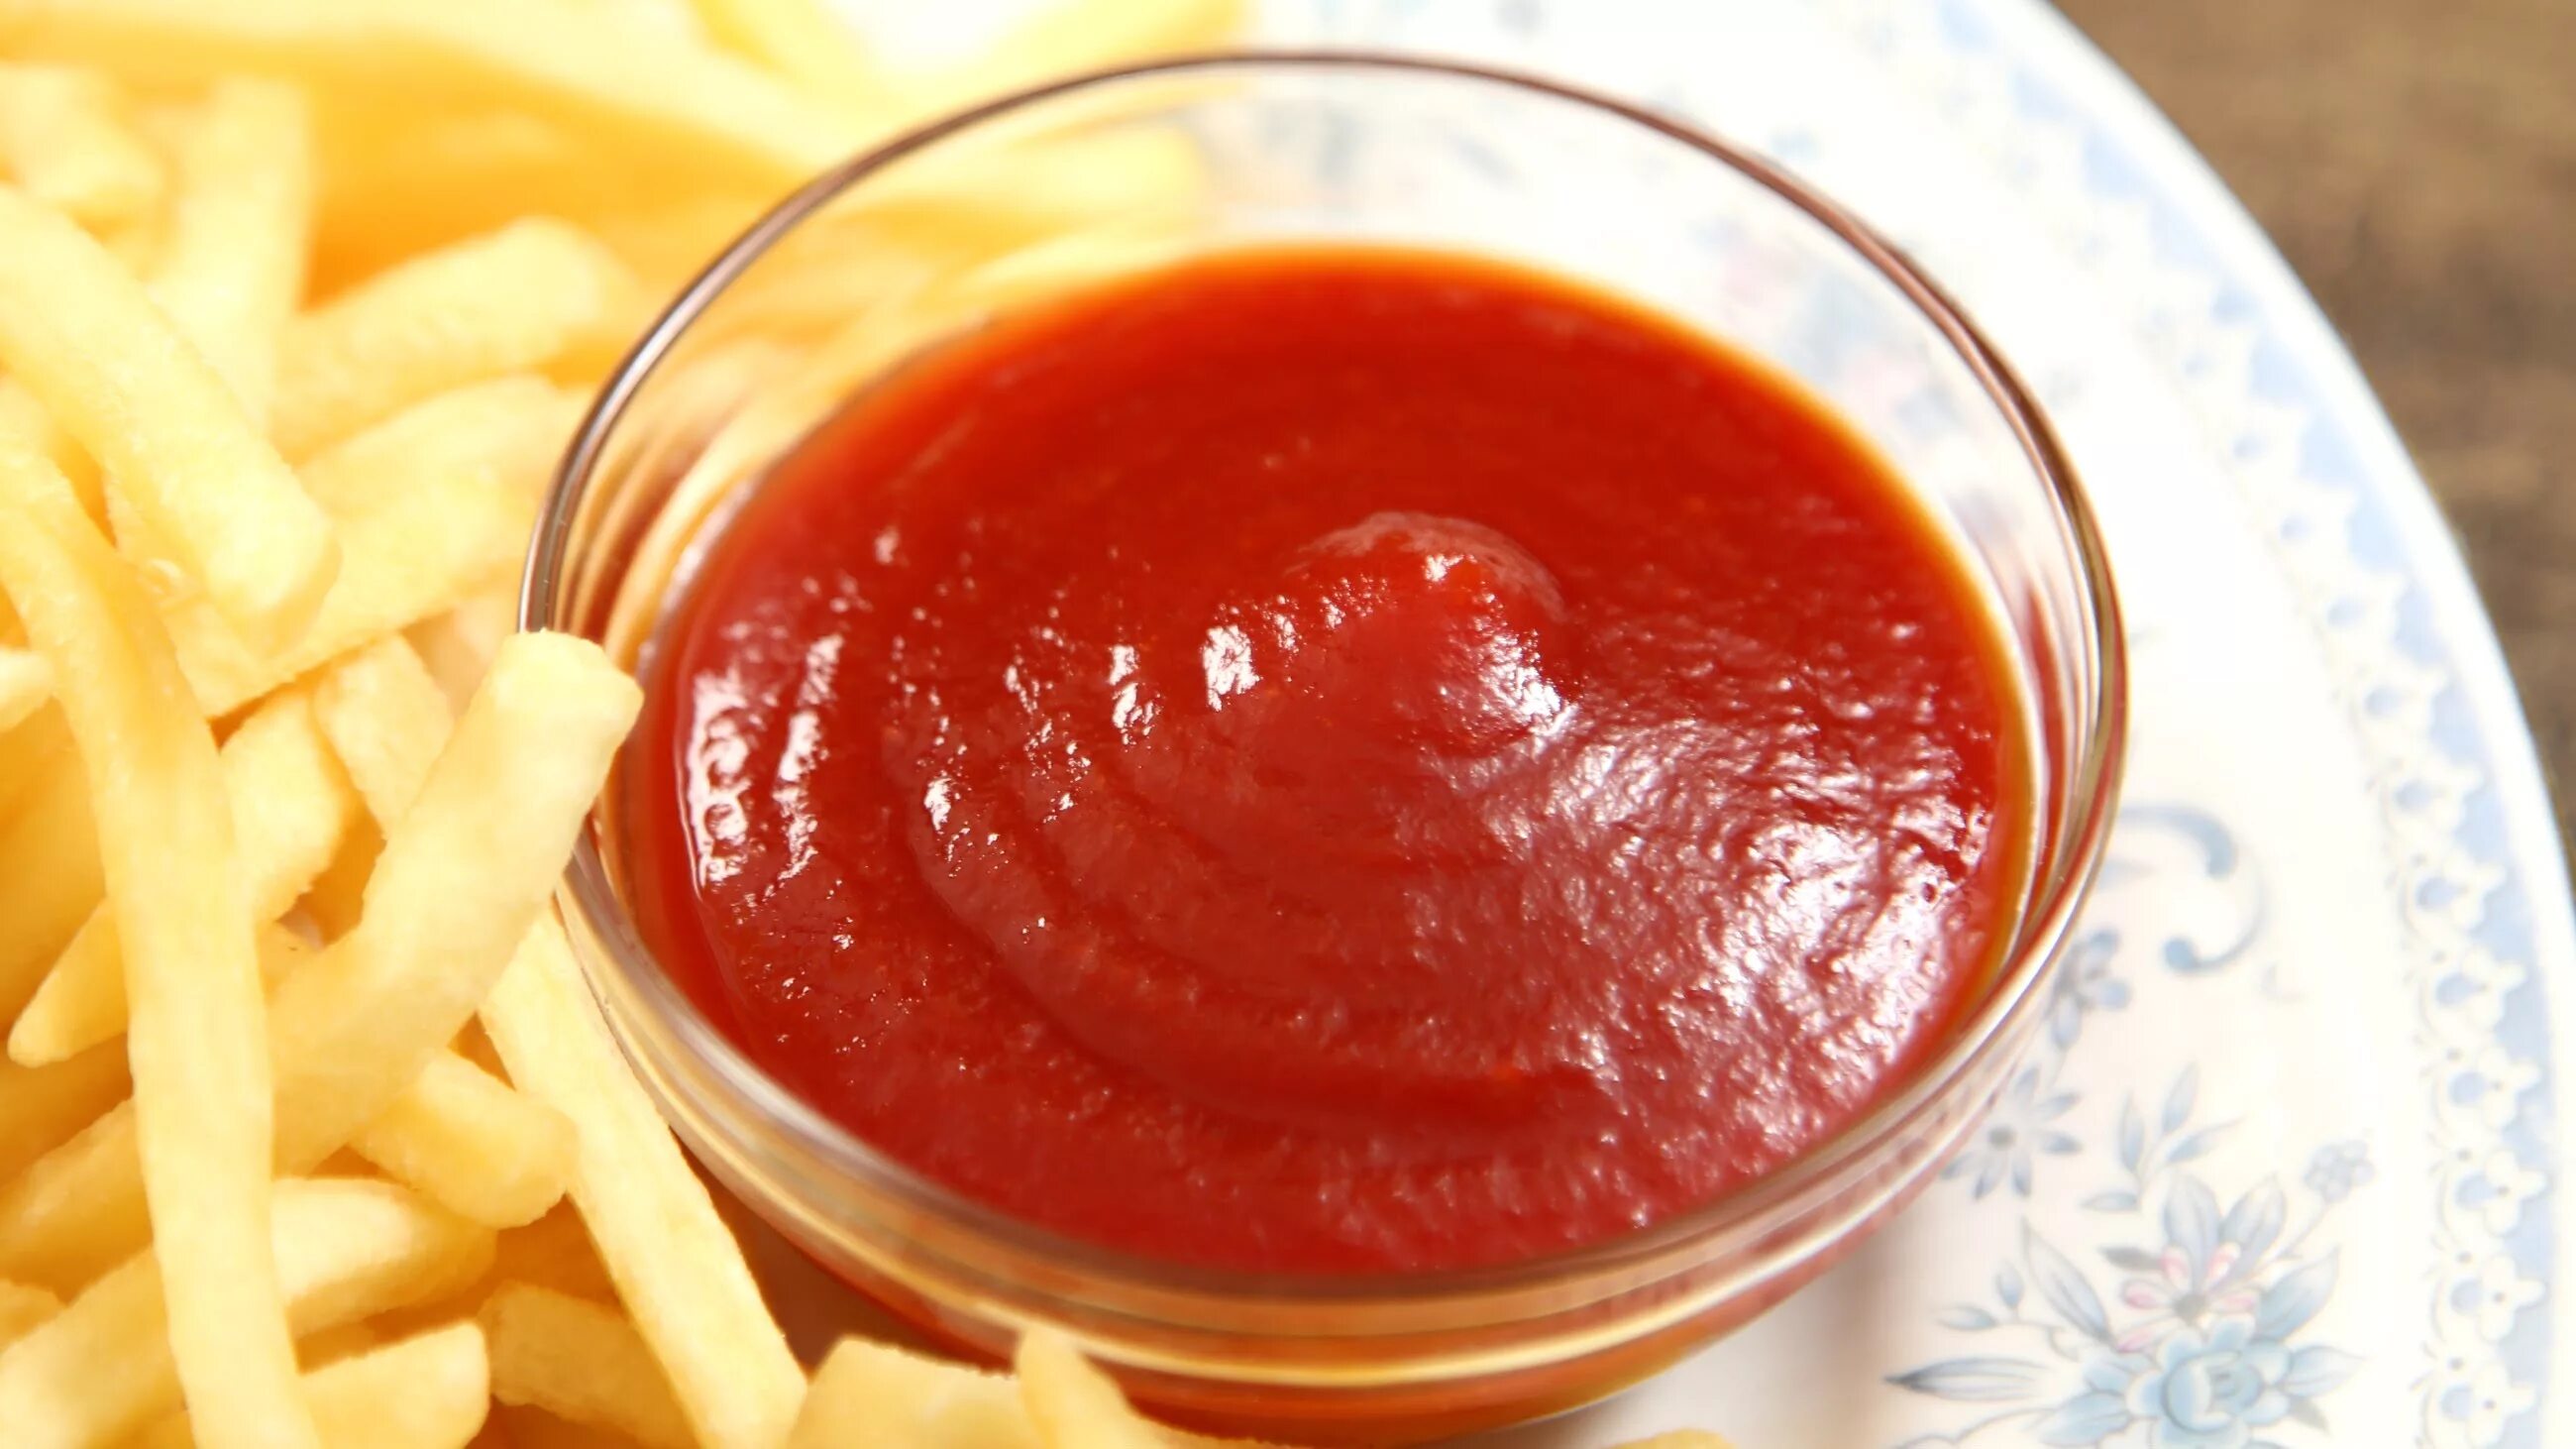 Кетчуп. Соусы. Соус для мяса. Томатный соус. Tomato ketchup